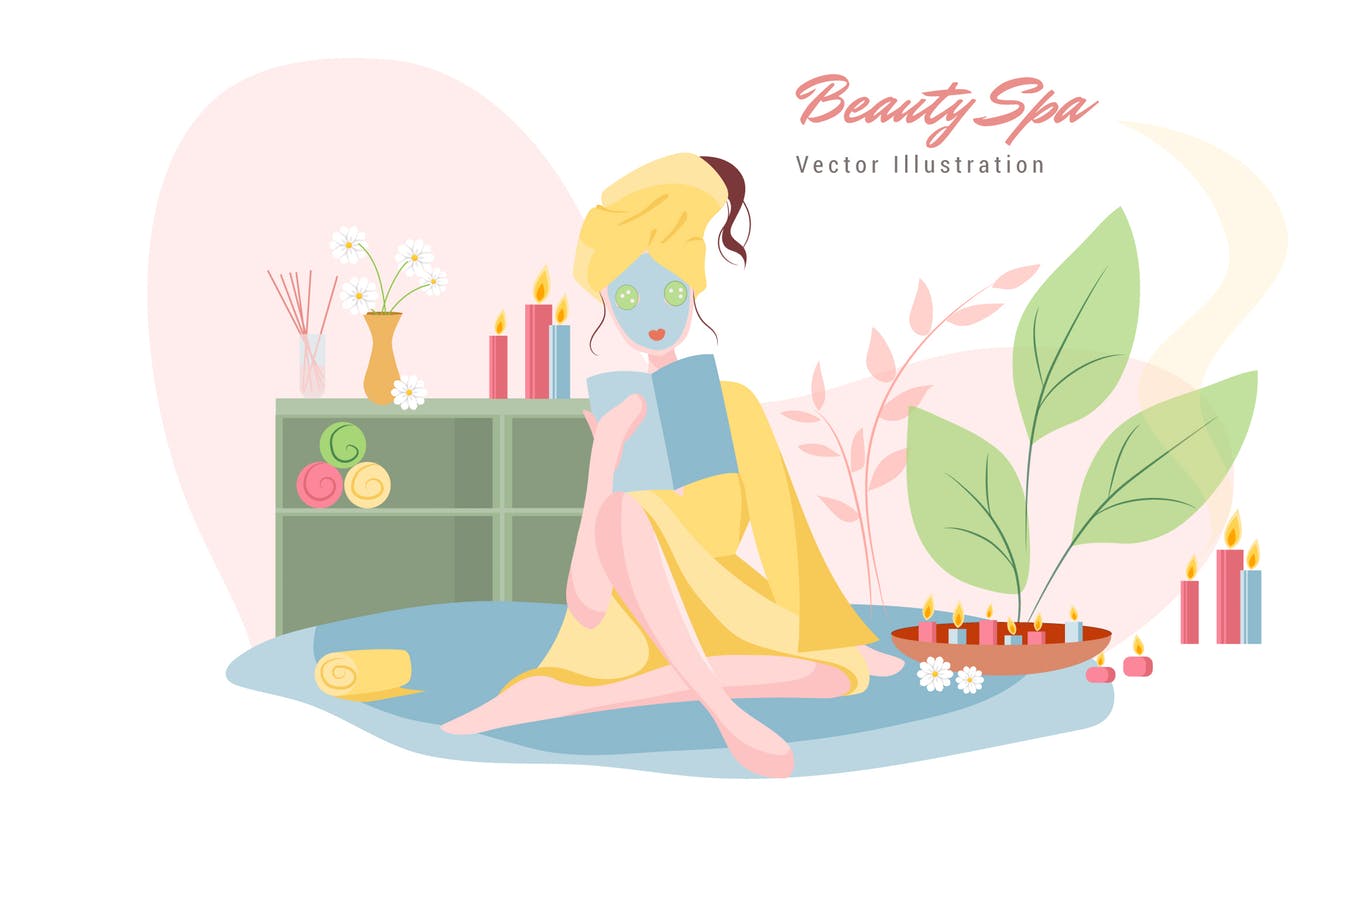 美容SPA主题矢量插画第一素材精选设计素材v7 Beauty Spa Vector Illustration插图